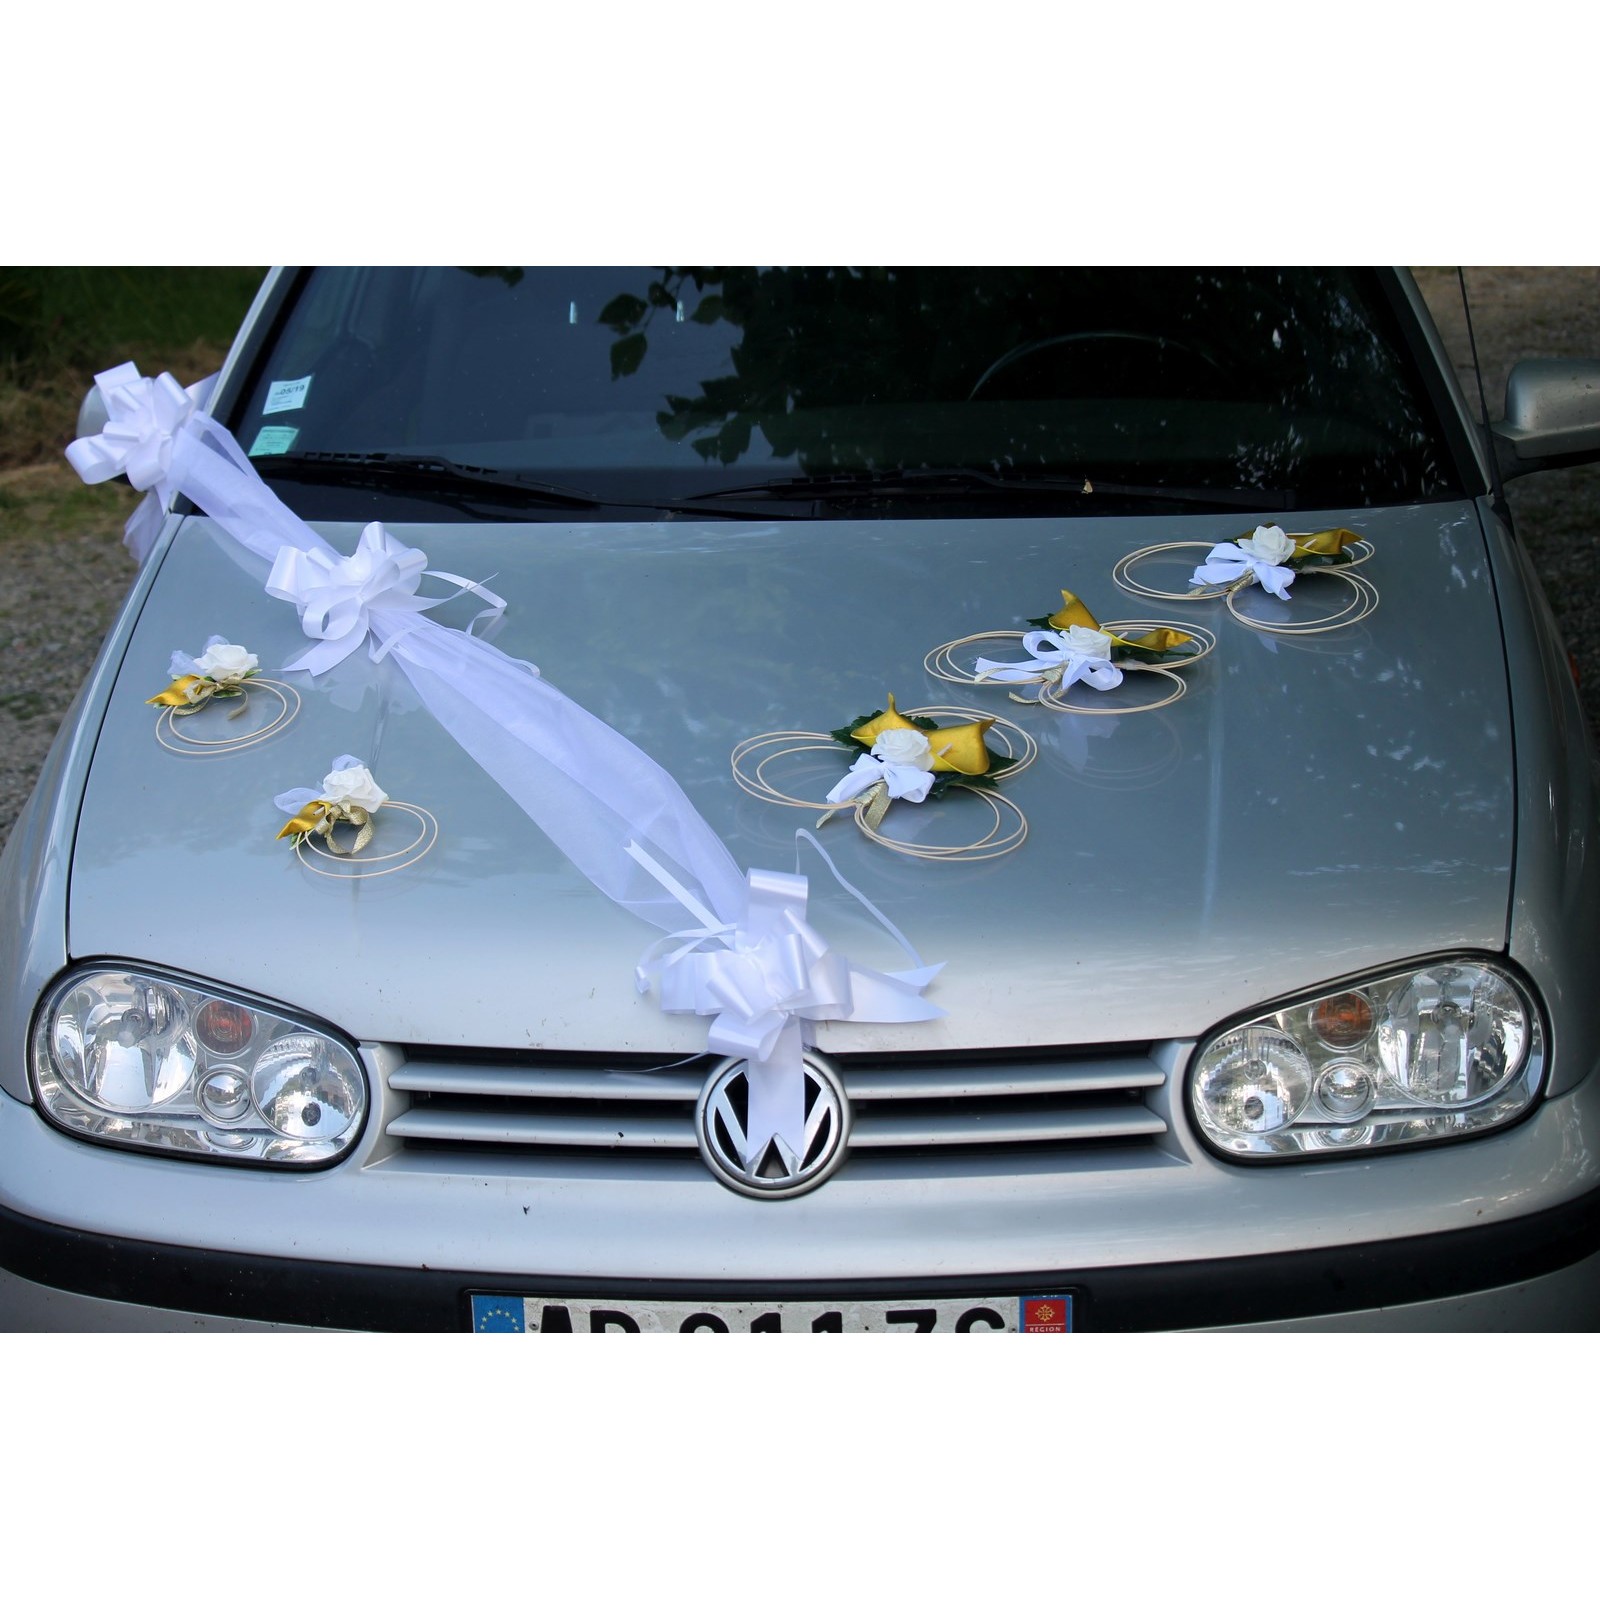 Décoration voiture mariées mariage Blanc et Or arums